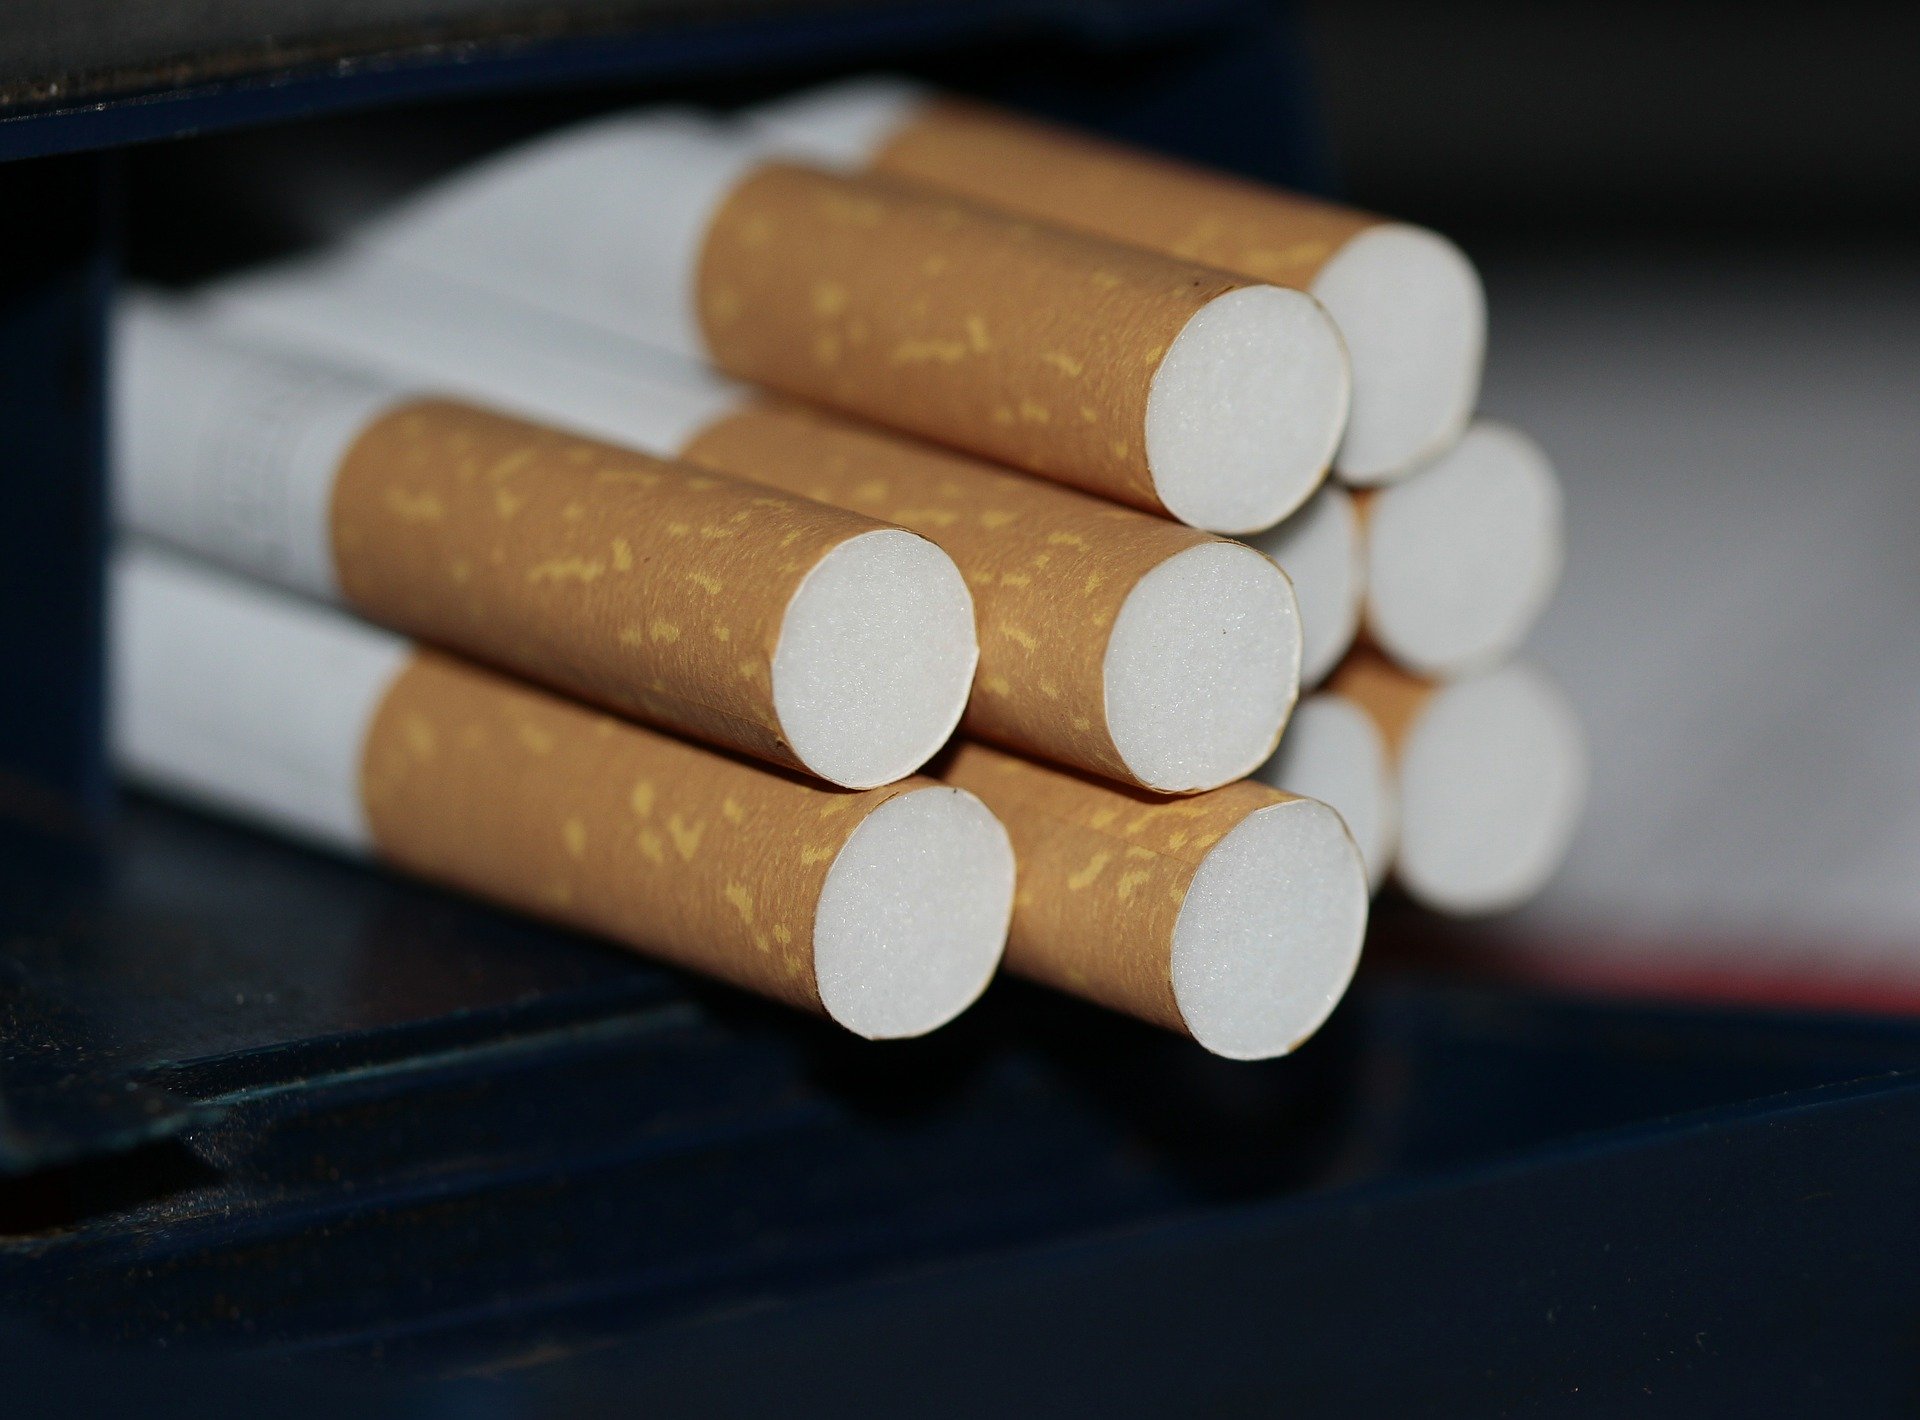 Поставка и оборот табачной продукции без лицензии будет грозить лишением свободы до 3 лет